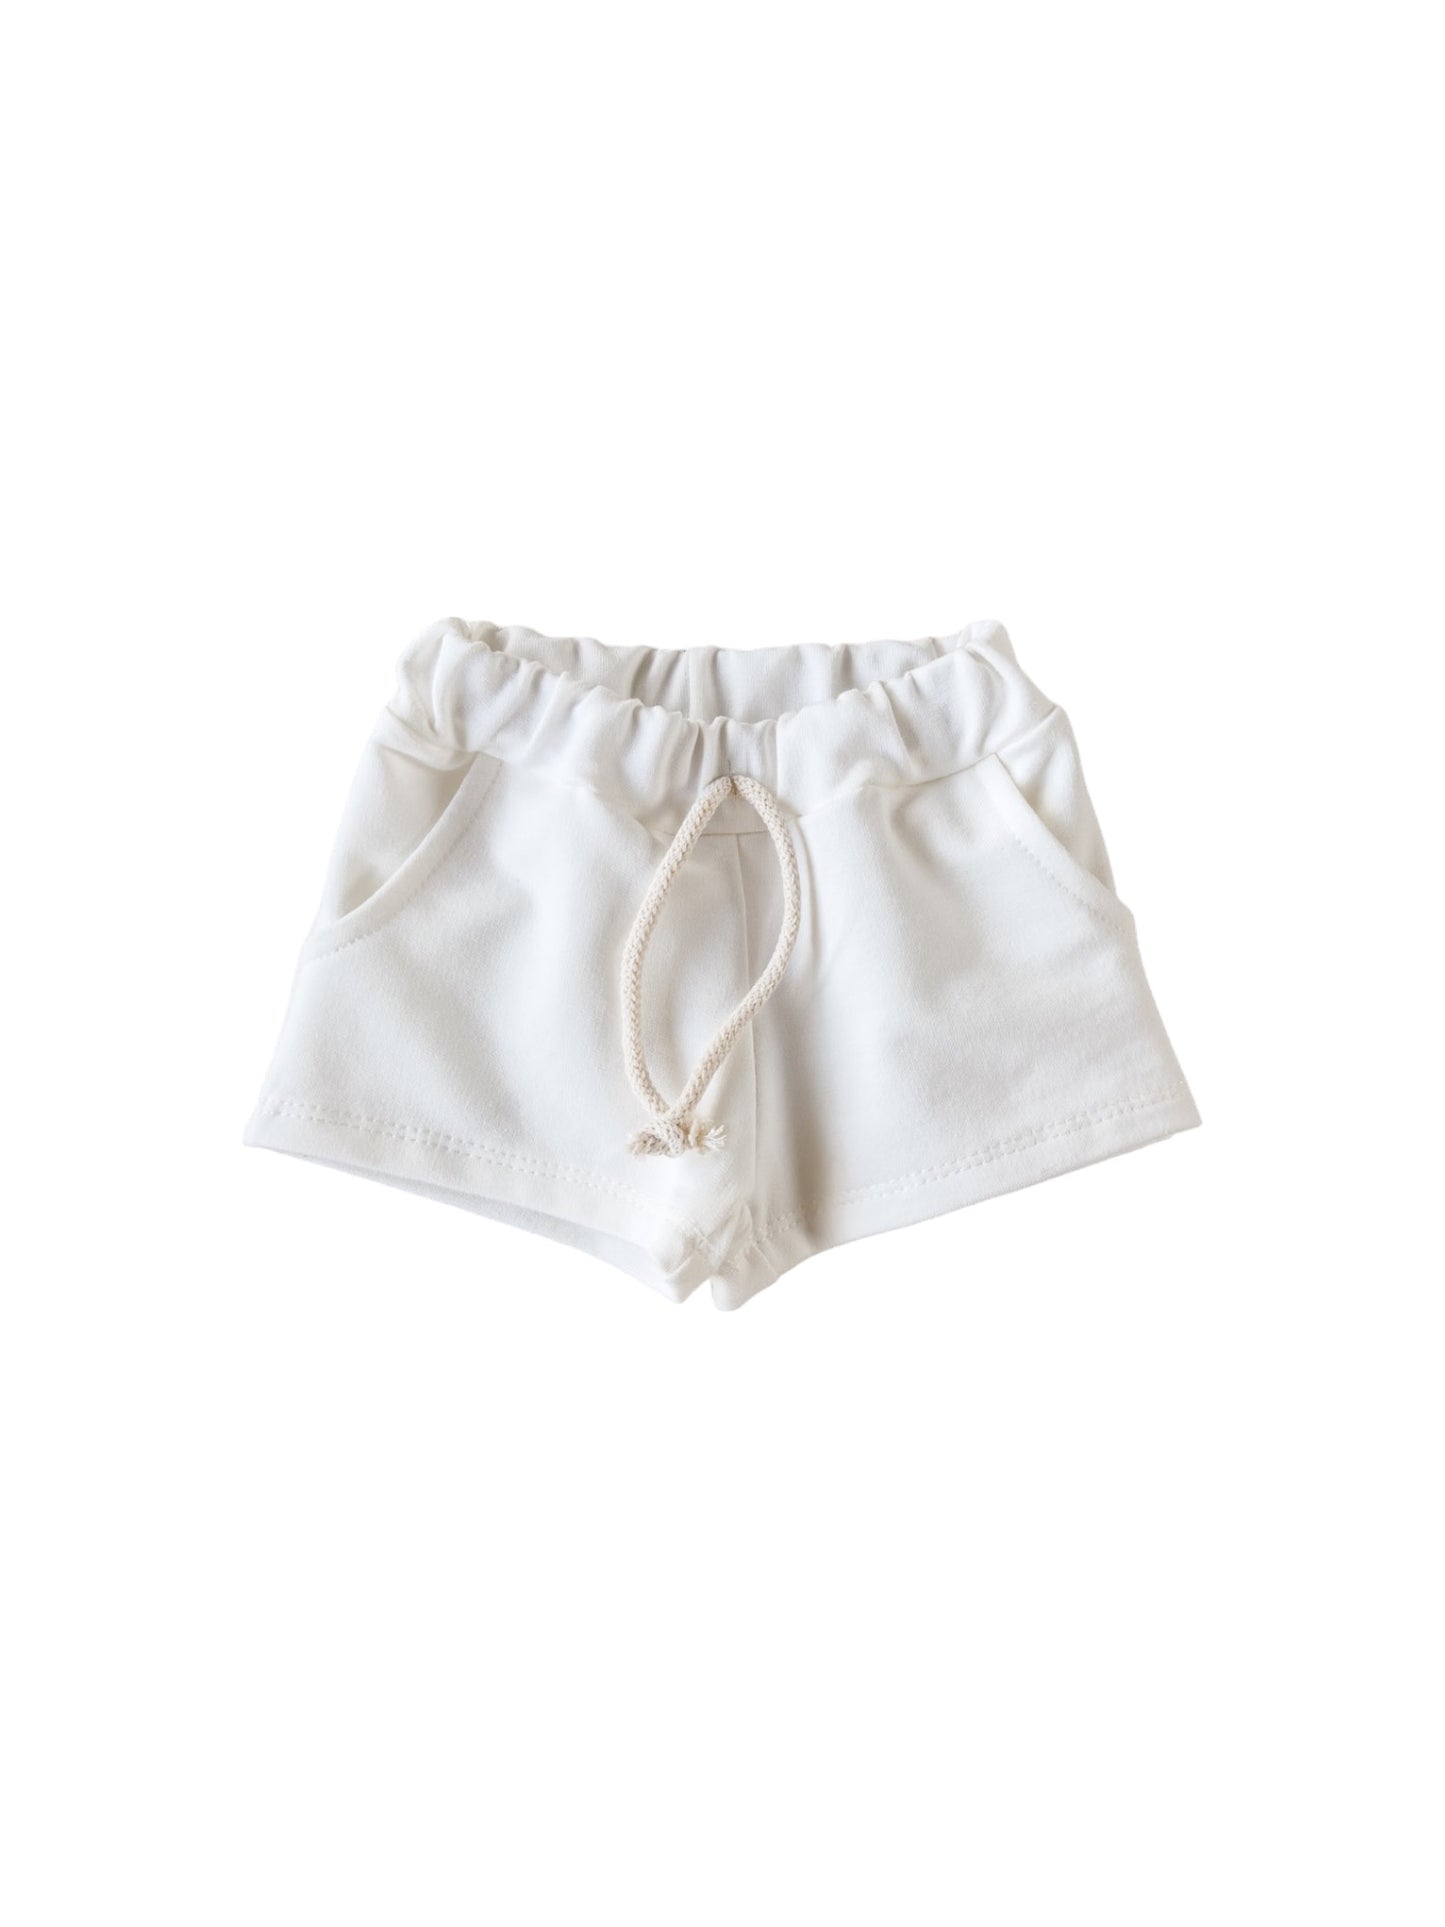 Cotton shorts / ivory